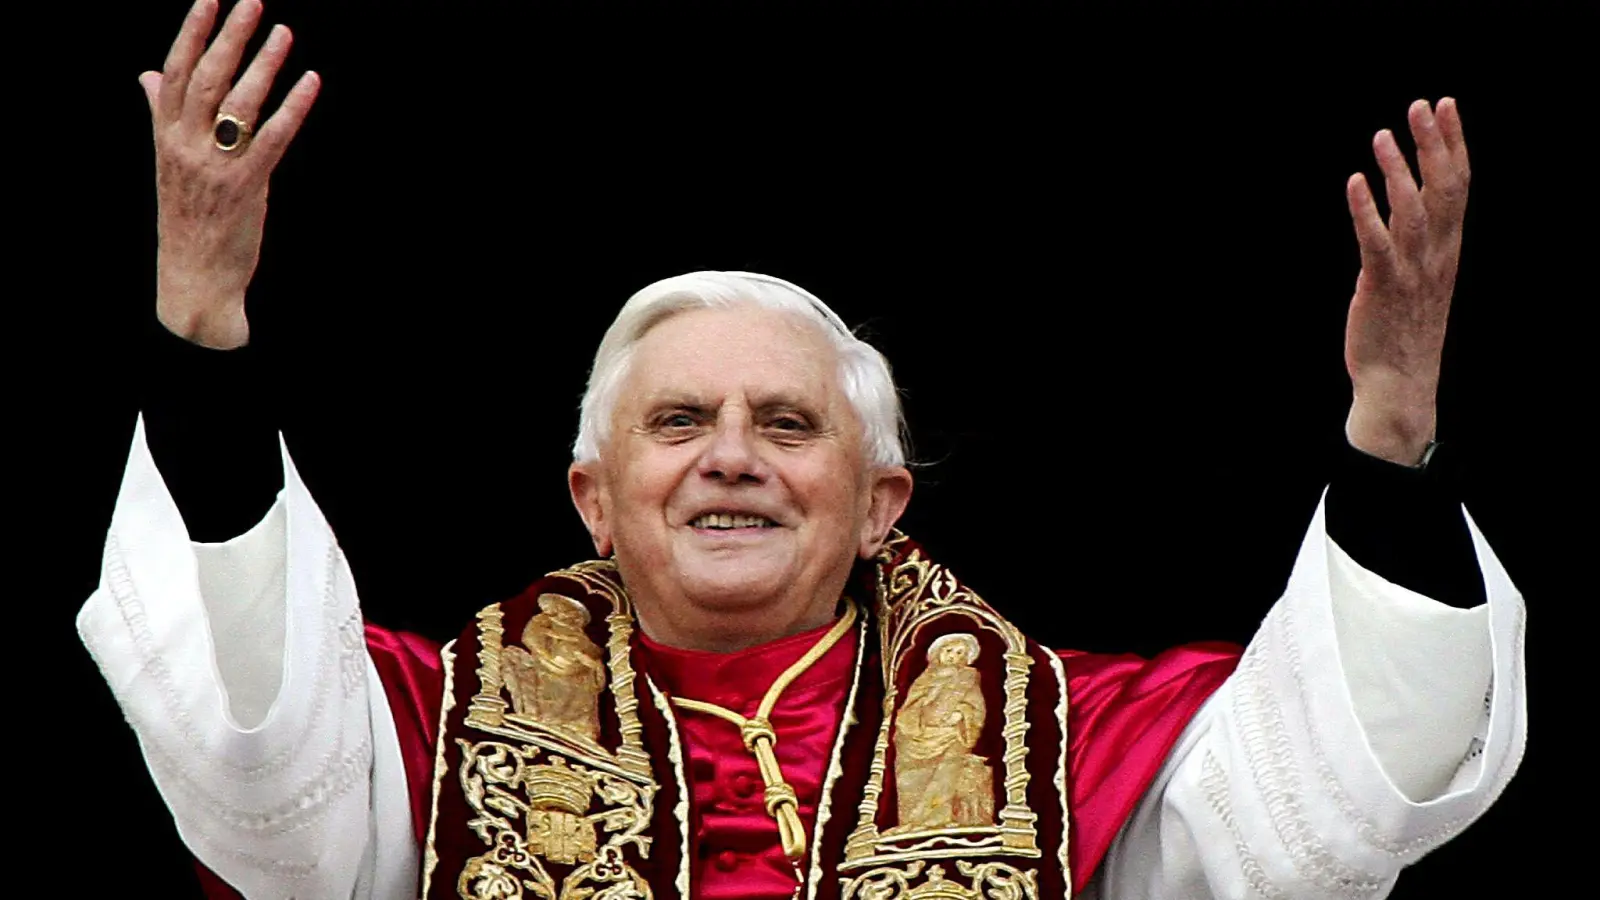 Der damals neu gewählte Papst Benedikt XVI., zuvor Joseph Kardinal Ratzinger, grüßt am 19.04.2005 die Menschen auf dem Petersplatz in Rom. (Foto: Claudio Onorati/ansa via epa/dpa)